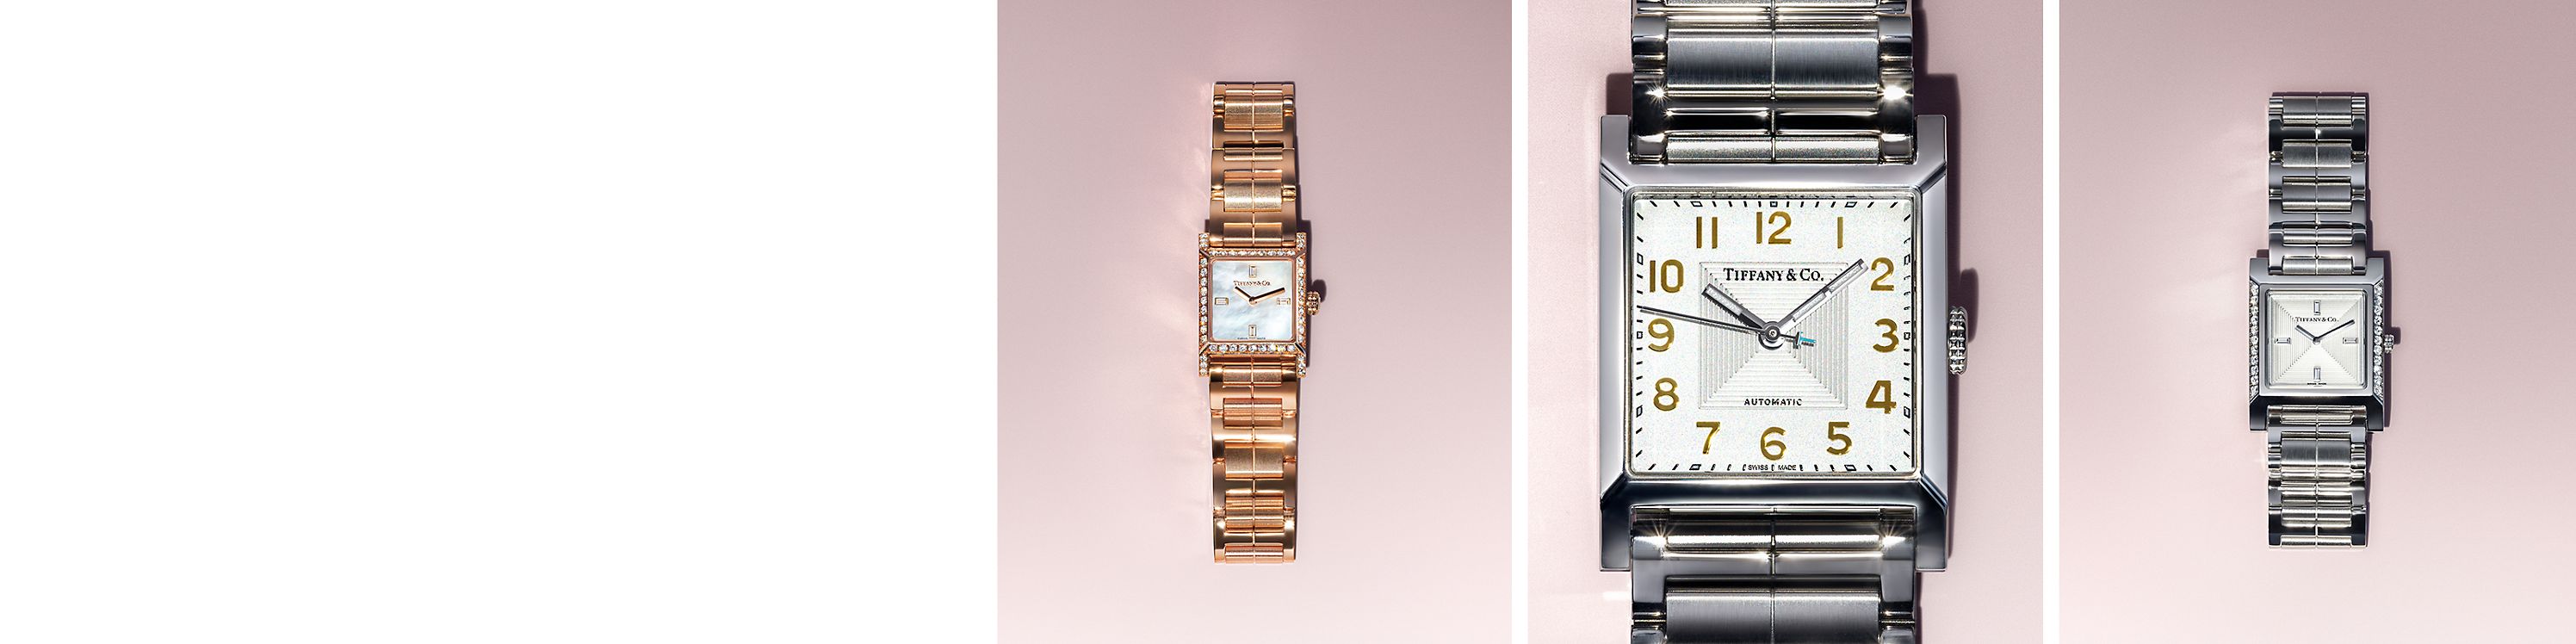 Tiffany & Co. Relógios de pulso